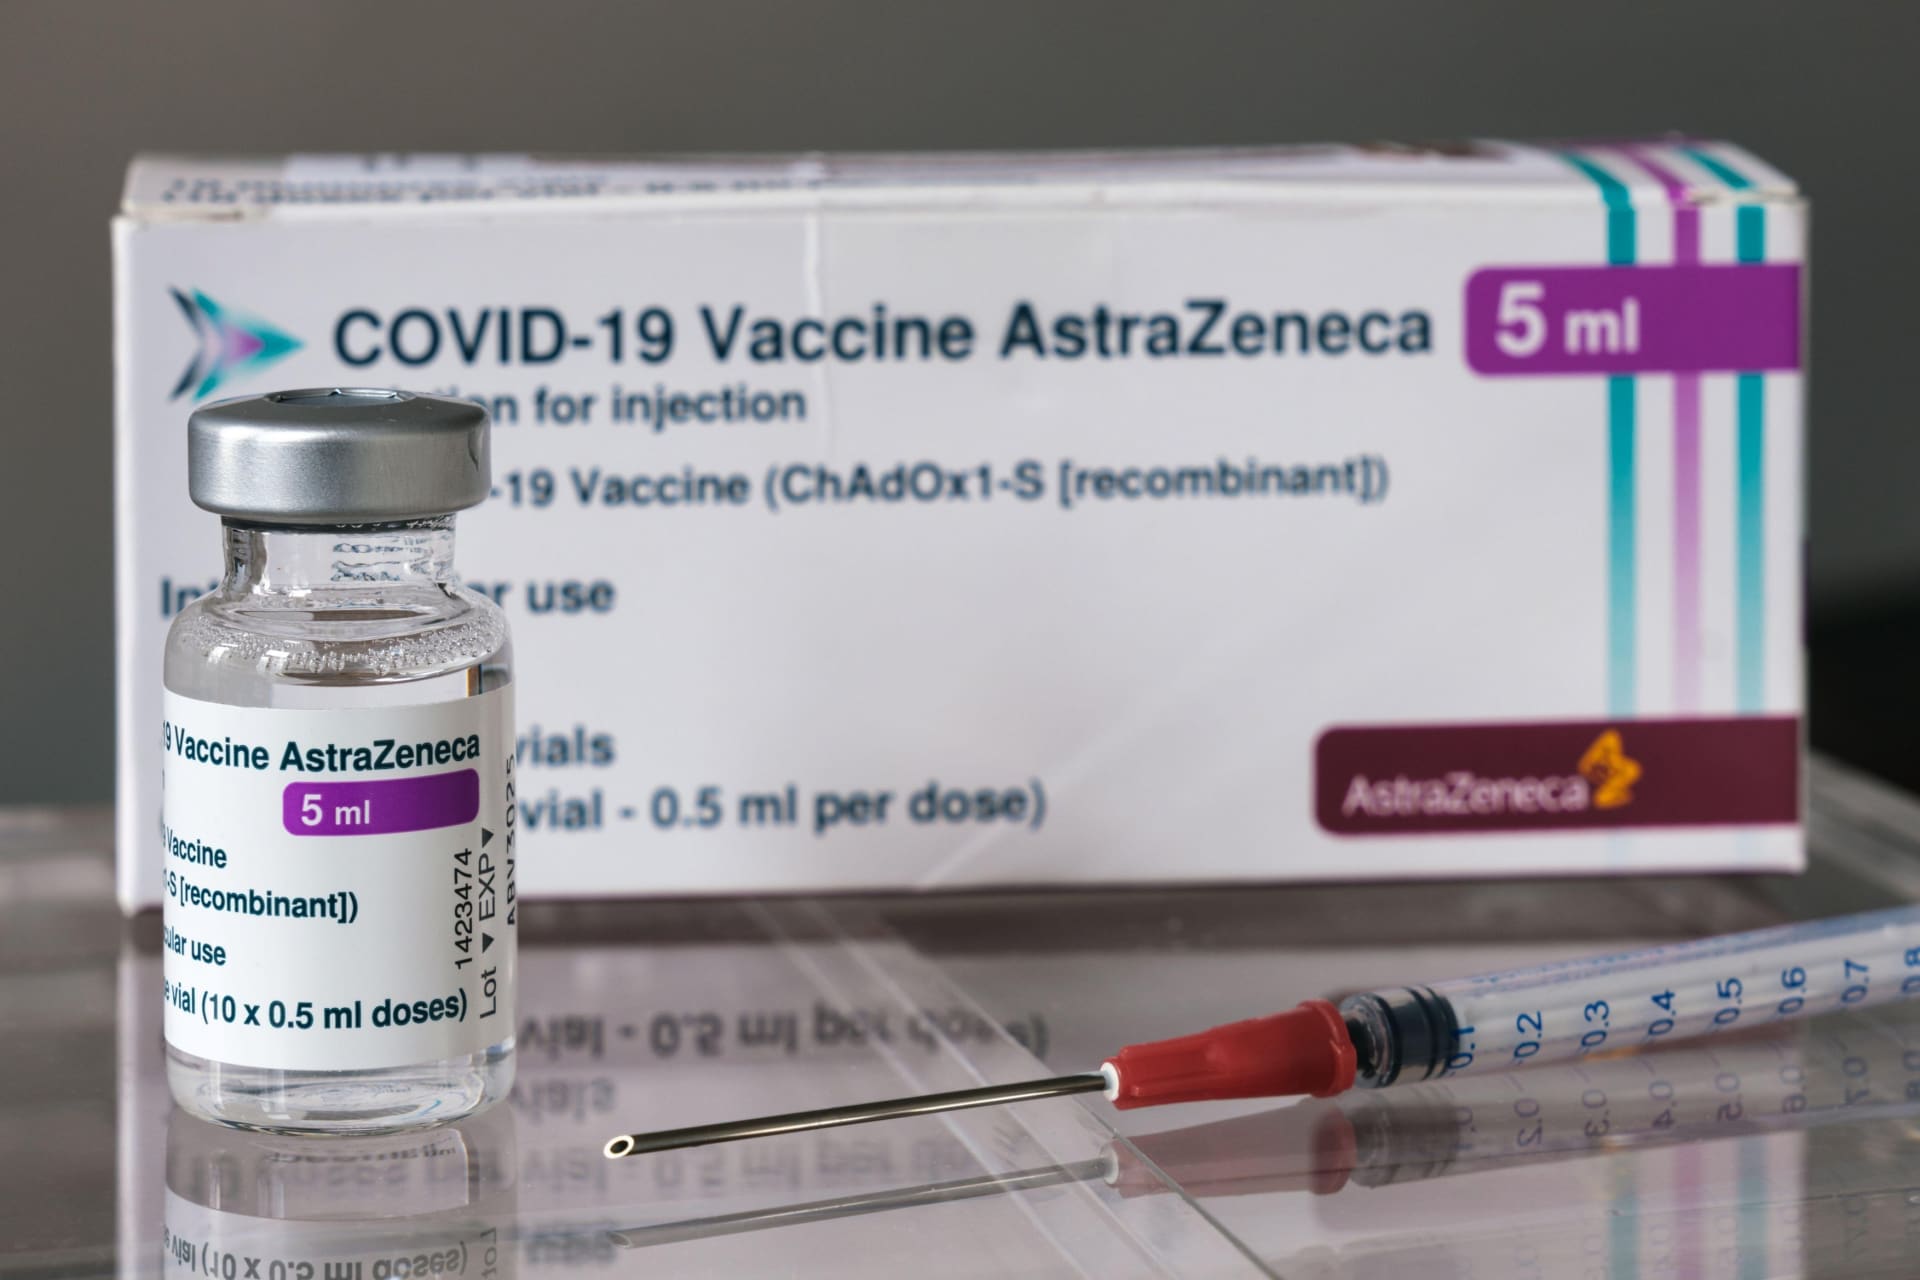 Rozhodnutí o ukončení vakcinace AstraZenecou v Dánsku je prý definitivní. 